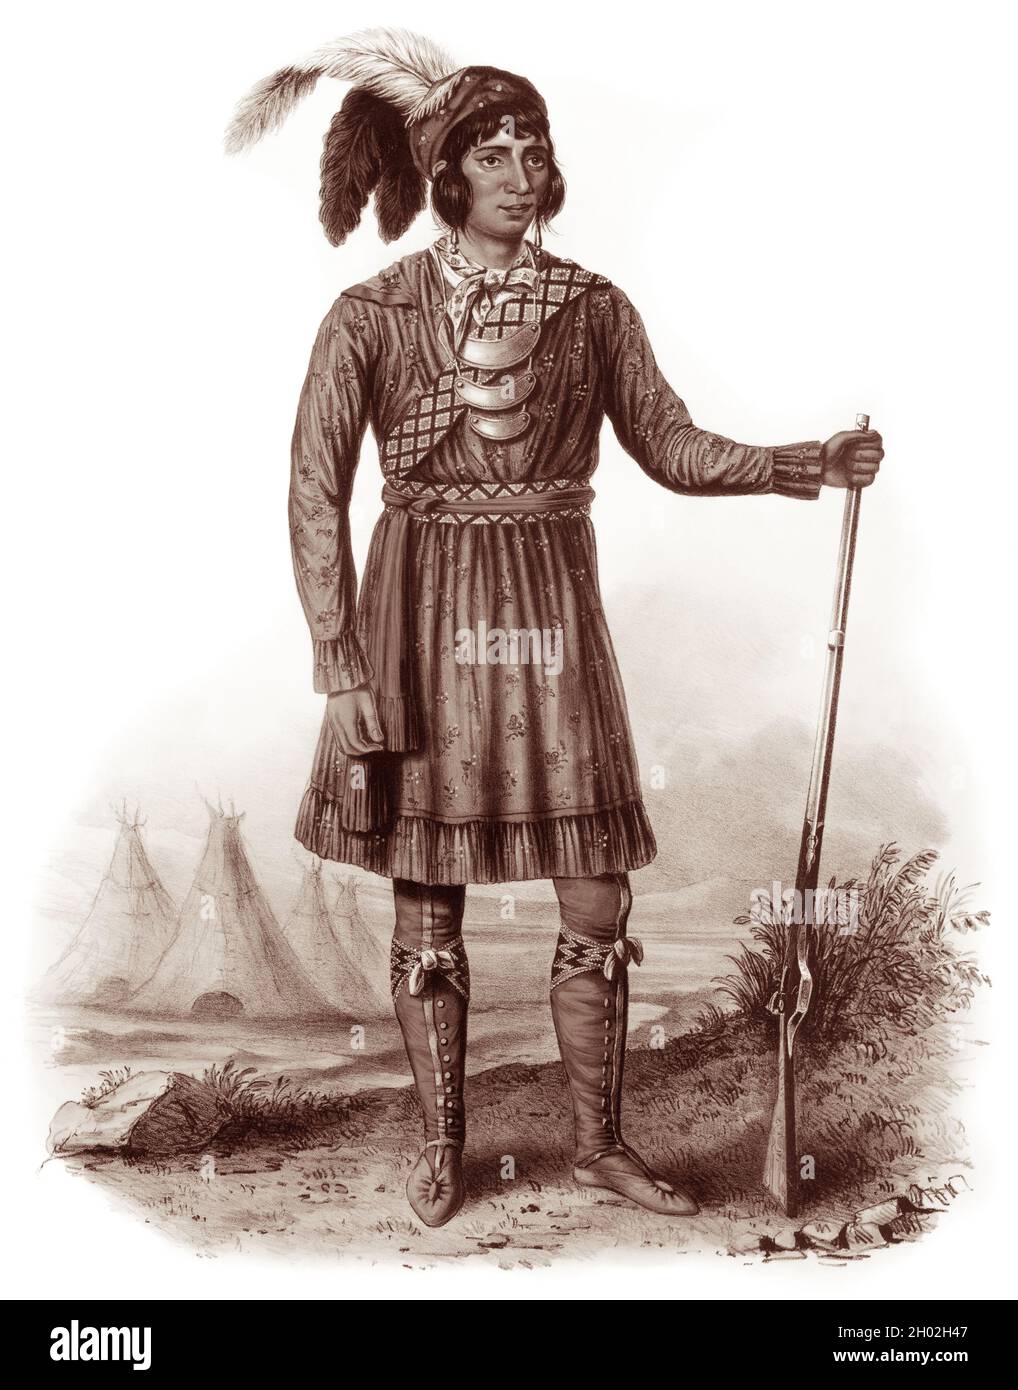 Chief Osceola (1804-1838), der bekannteste Führer der Seminoleinder, führte während des Zweiten Seminolenkrieges eine kleine Gruppe von Kriegern im Seminolenwiderstand an, als die Vereinigten Staaten versuchten, den Stamm aus ihren Ländern in Florida in das indische Territorium westlich des Mississippi-Flusses zu entfernen. Stockfoto